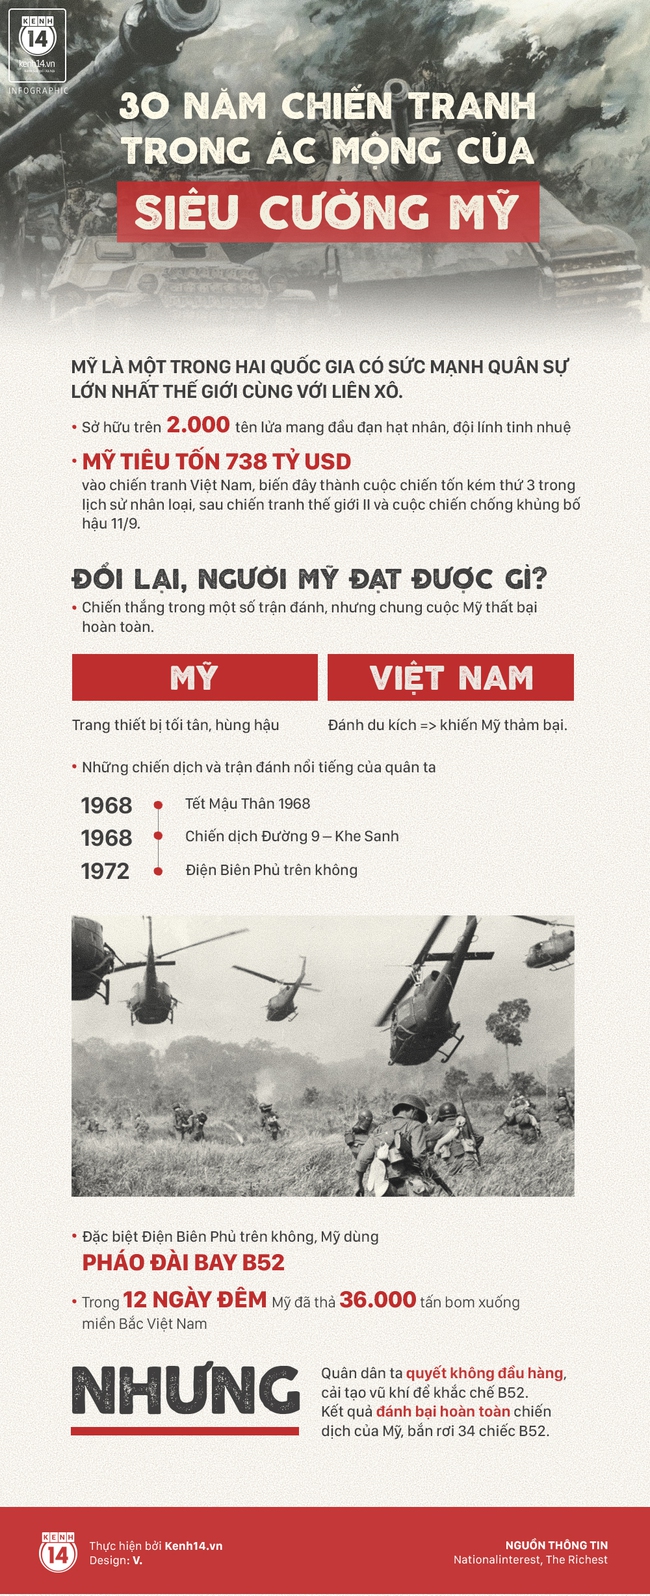 3 chiến thắng khiến chúng ta luôn tự hào về sức mạnh của quân đội Việt Nam - Ảnh 3.